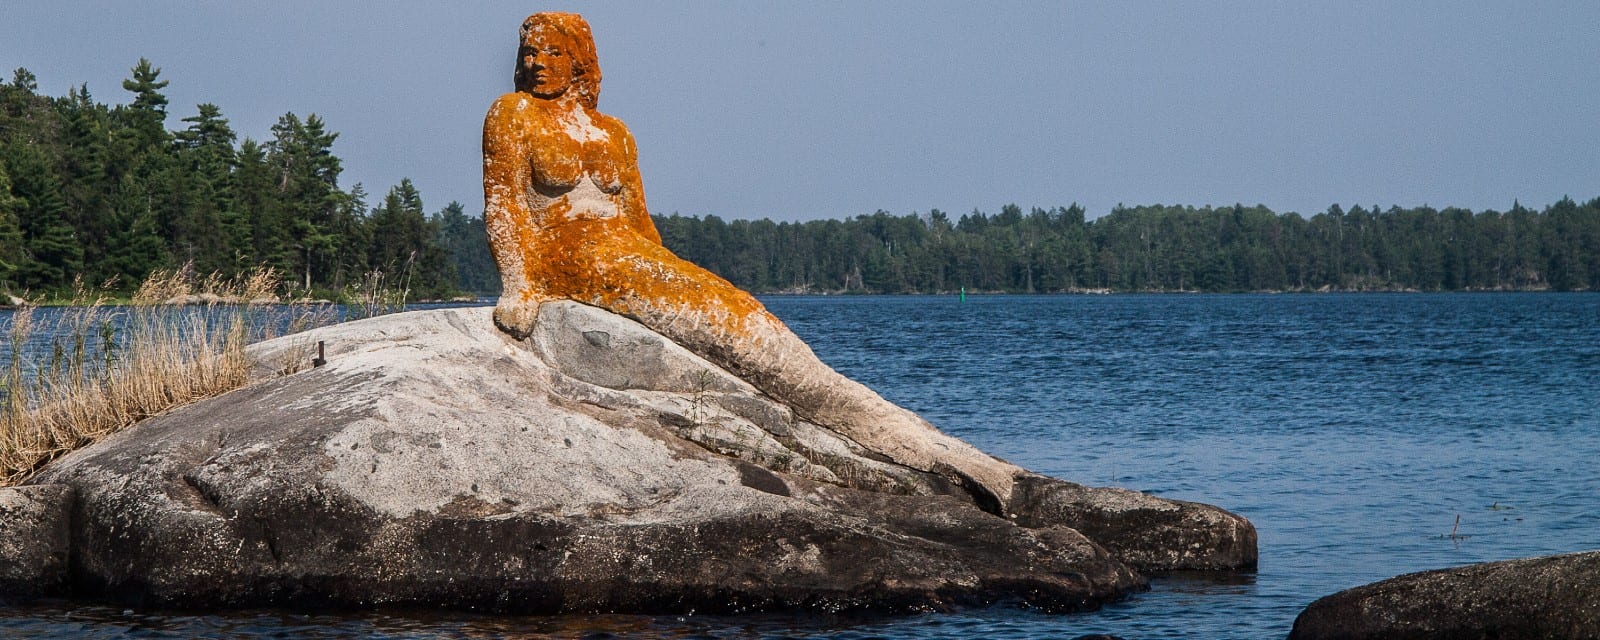 statue of mermaid